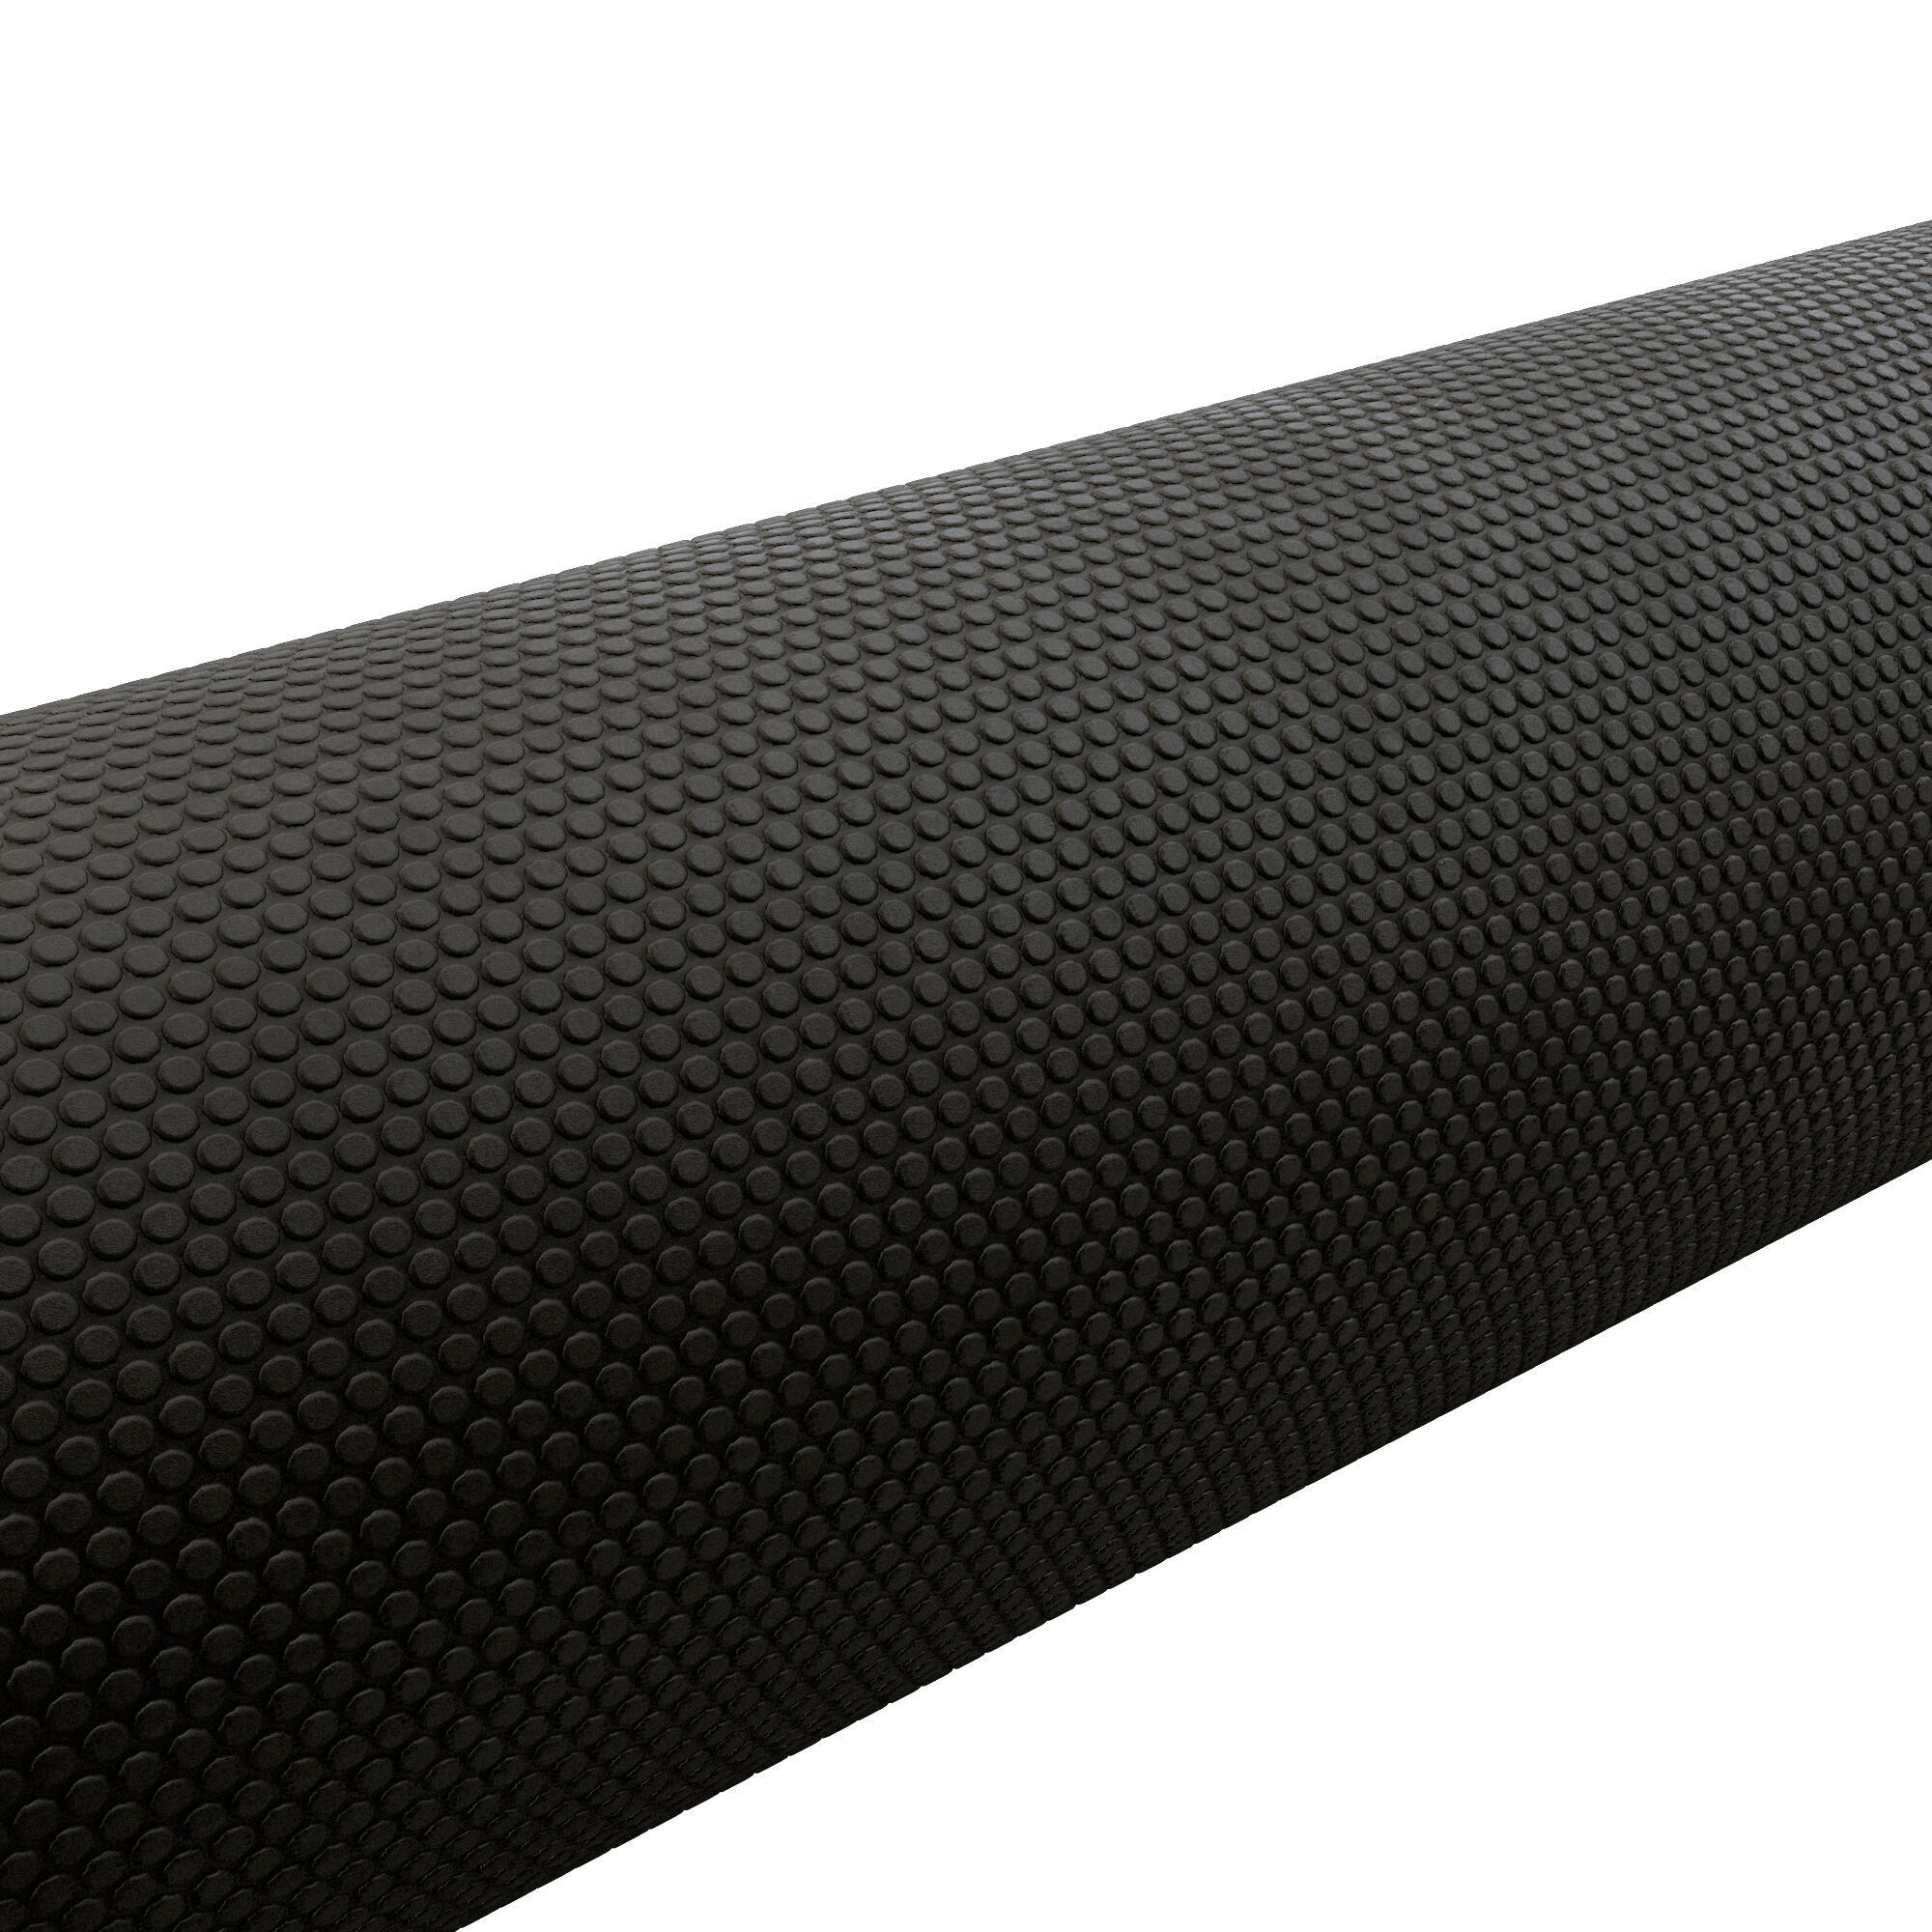 Fitness Foam Roller Length 90 cm Diameter 15 cm - Black 2/4